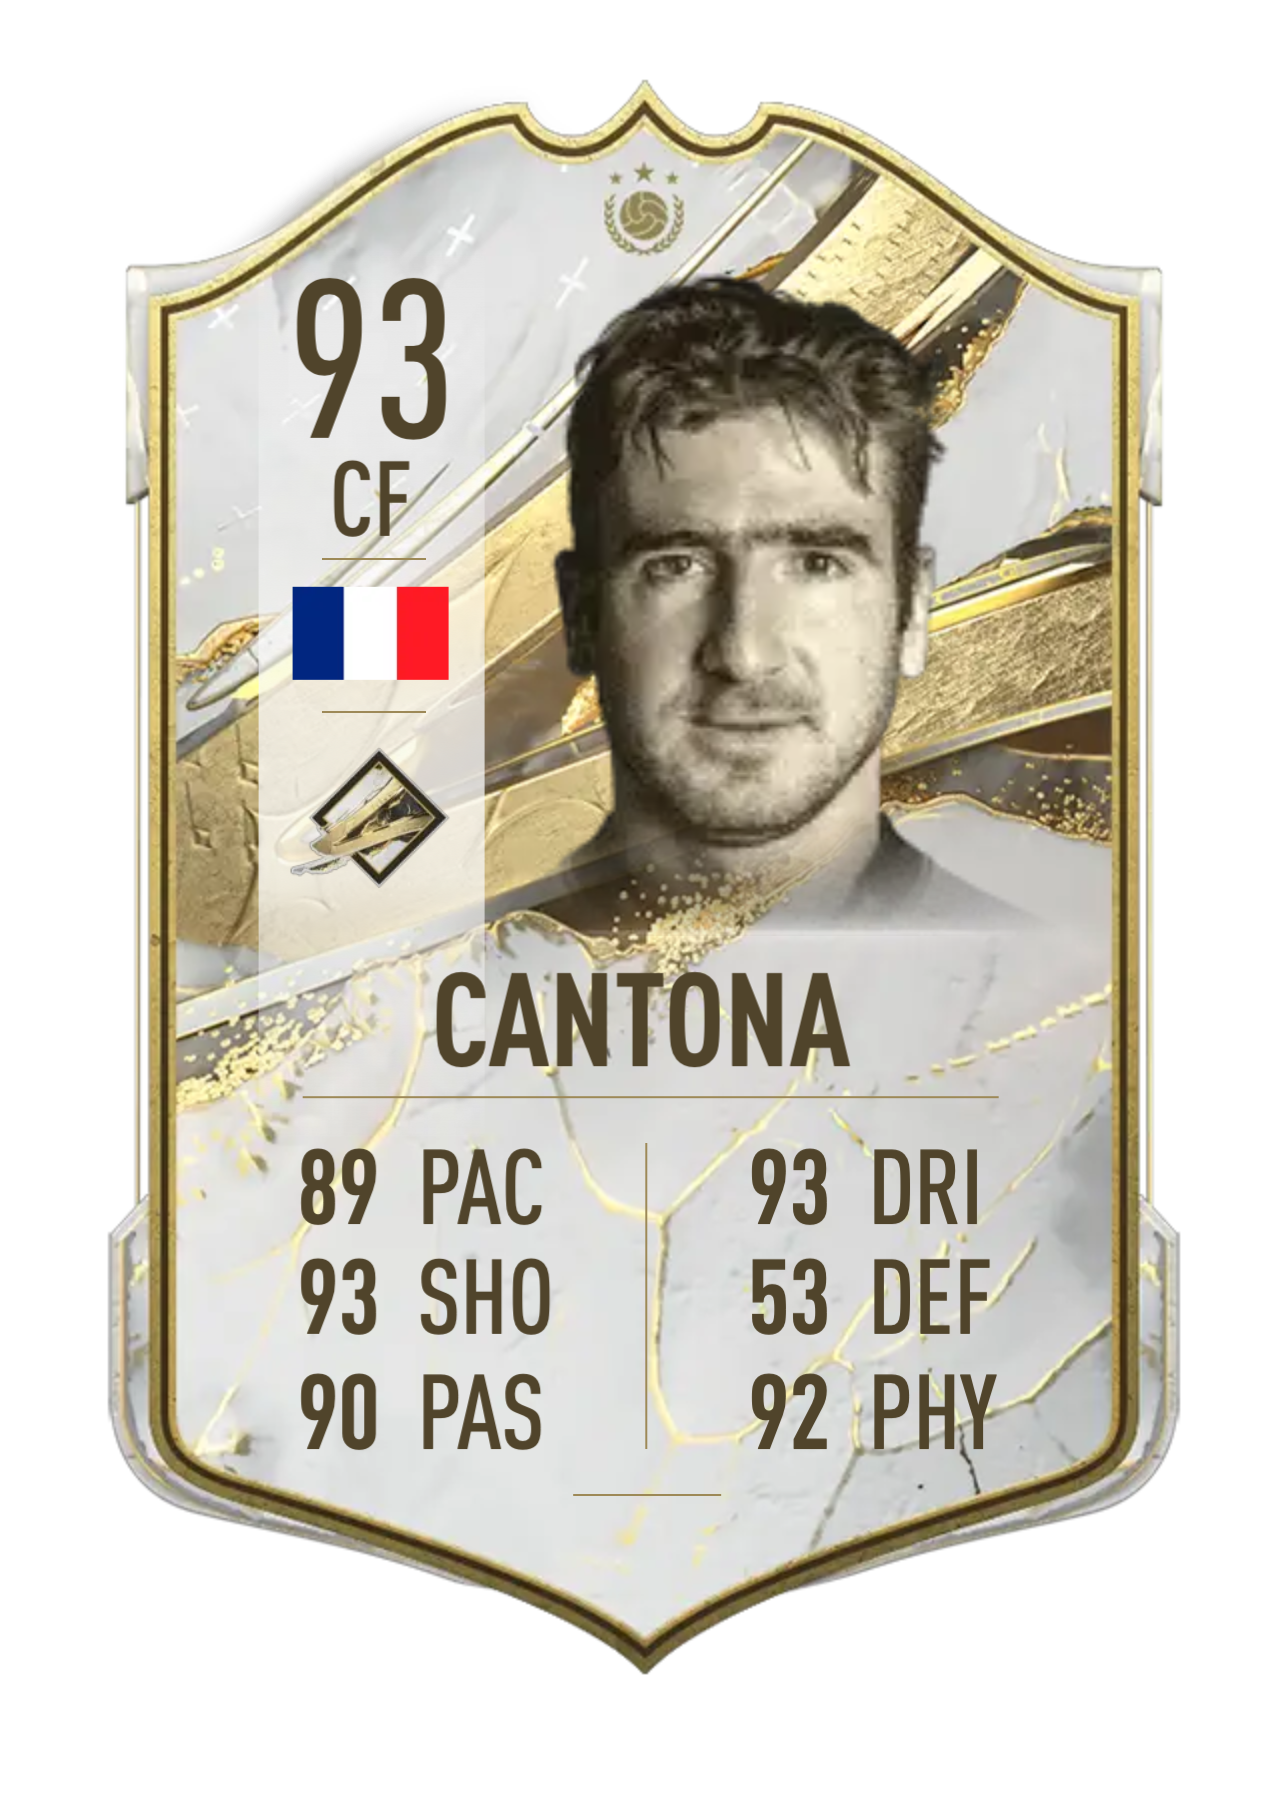 Cantona prime icon 93 rated